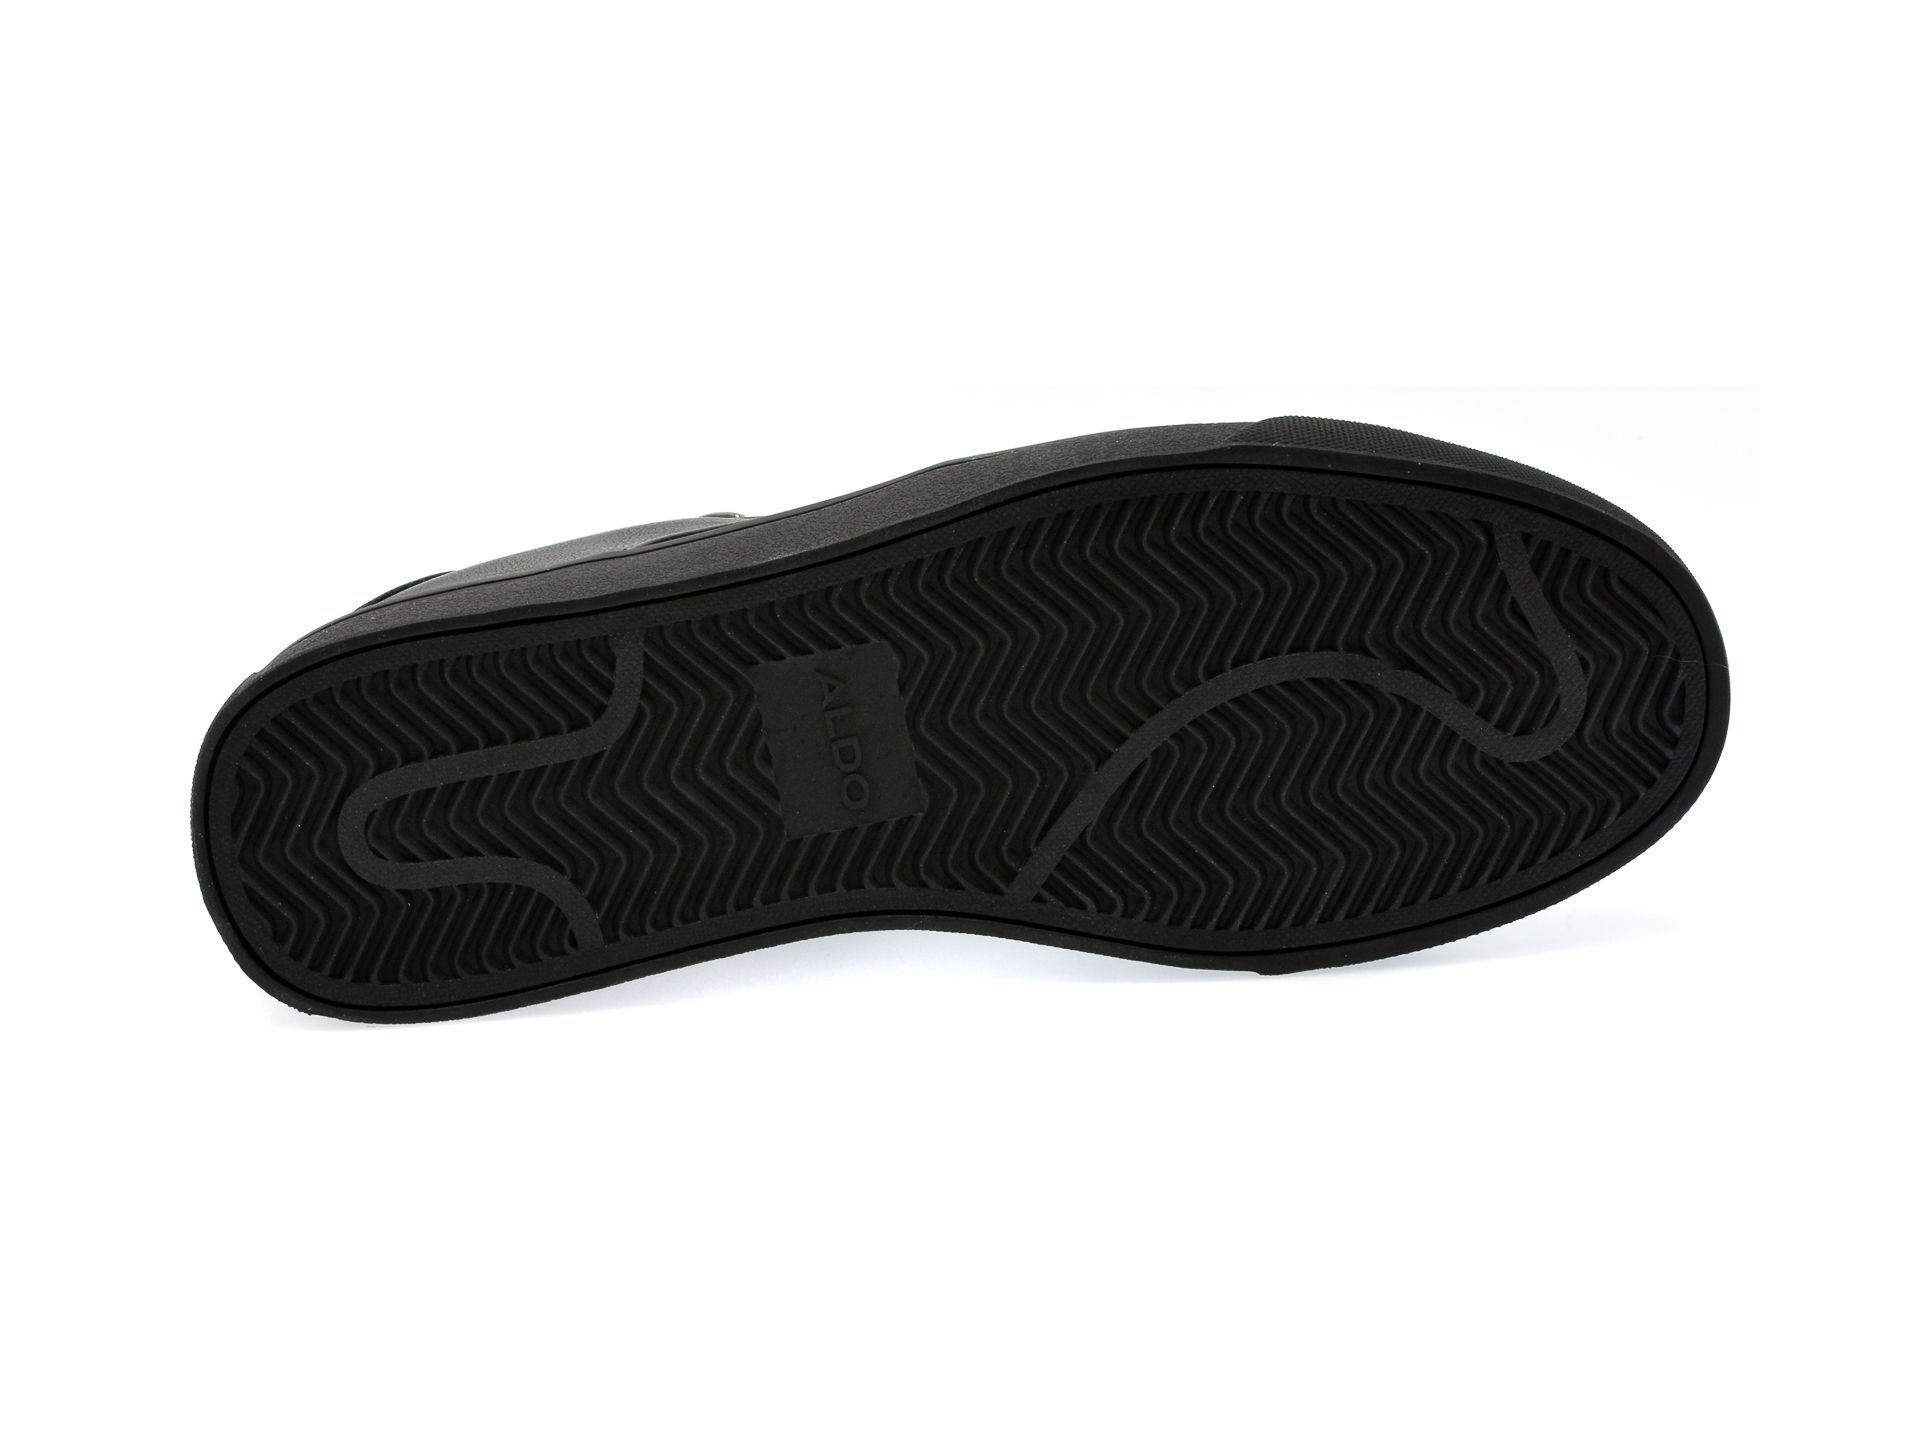 Pantofi ALDO negri, BOWSPRIT001, din piele ecologica